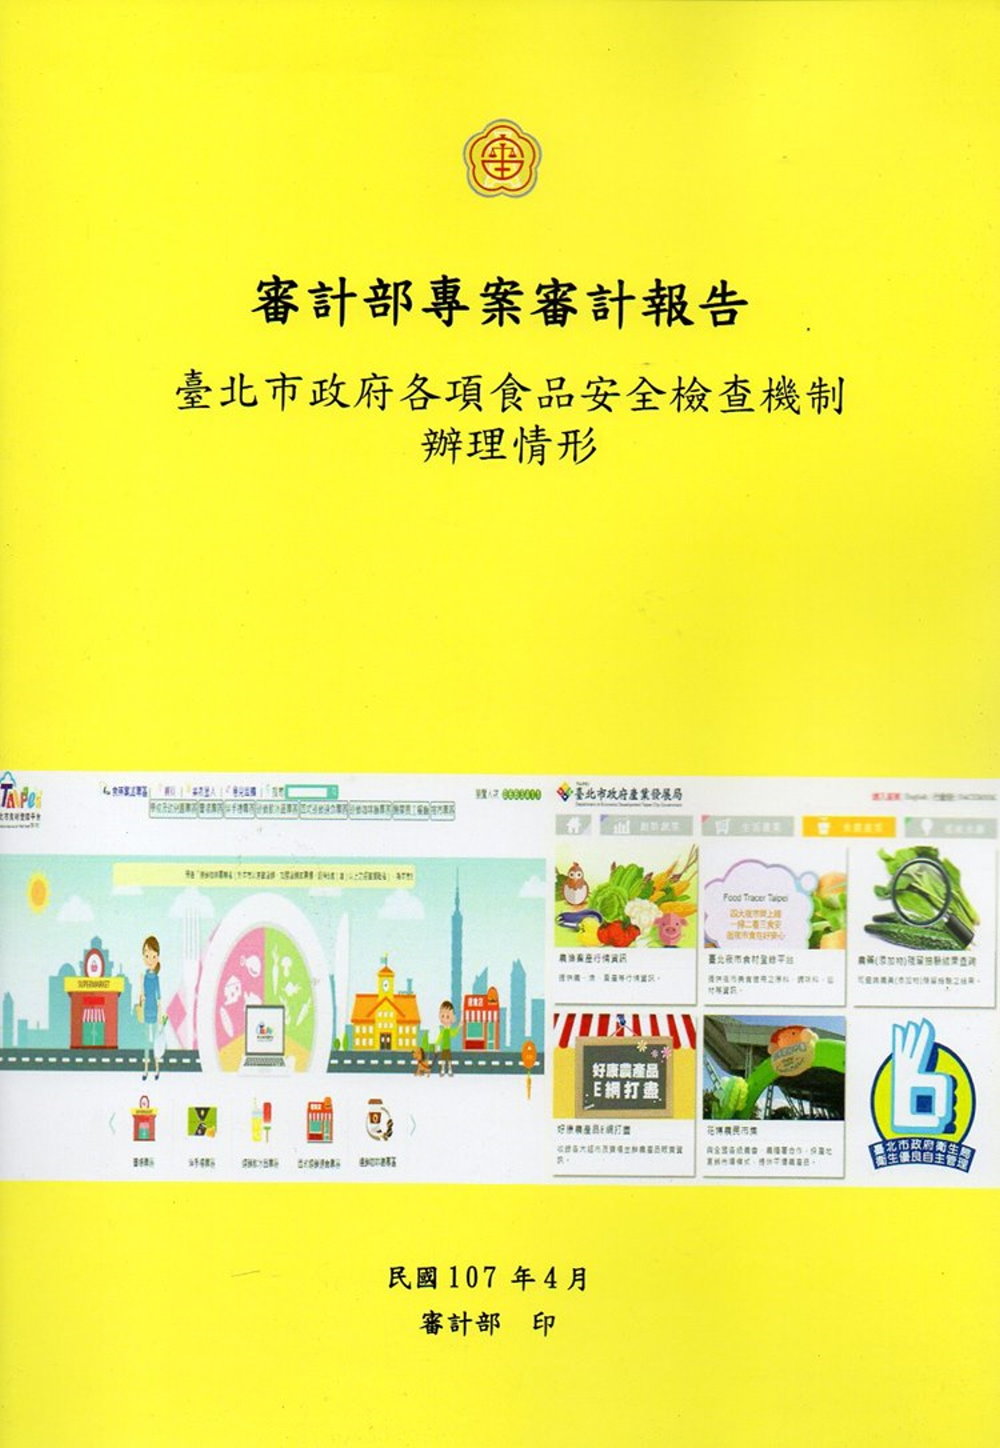 臺北市政府各項食品安全檢查機制辦理形情形